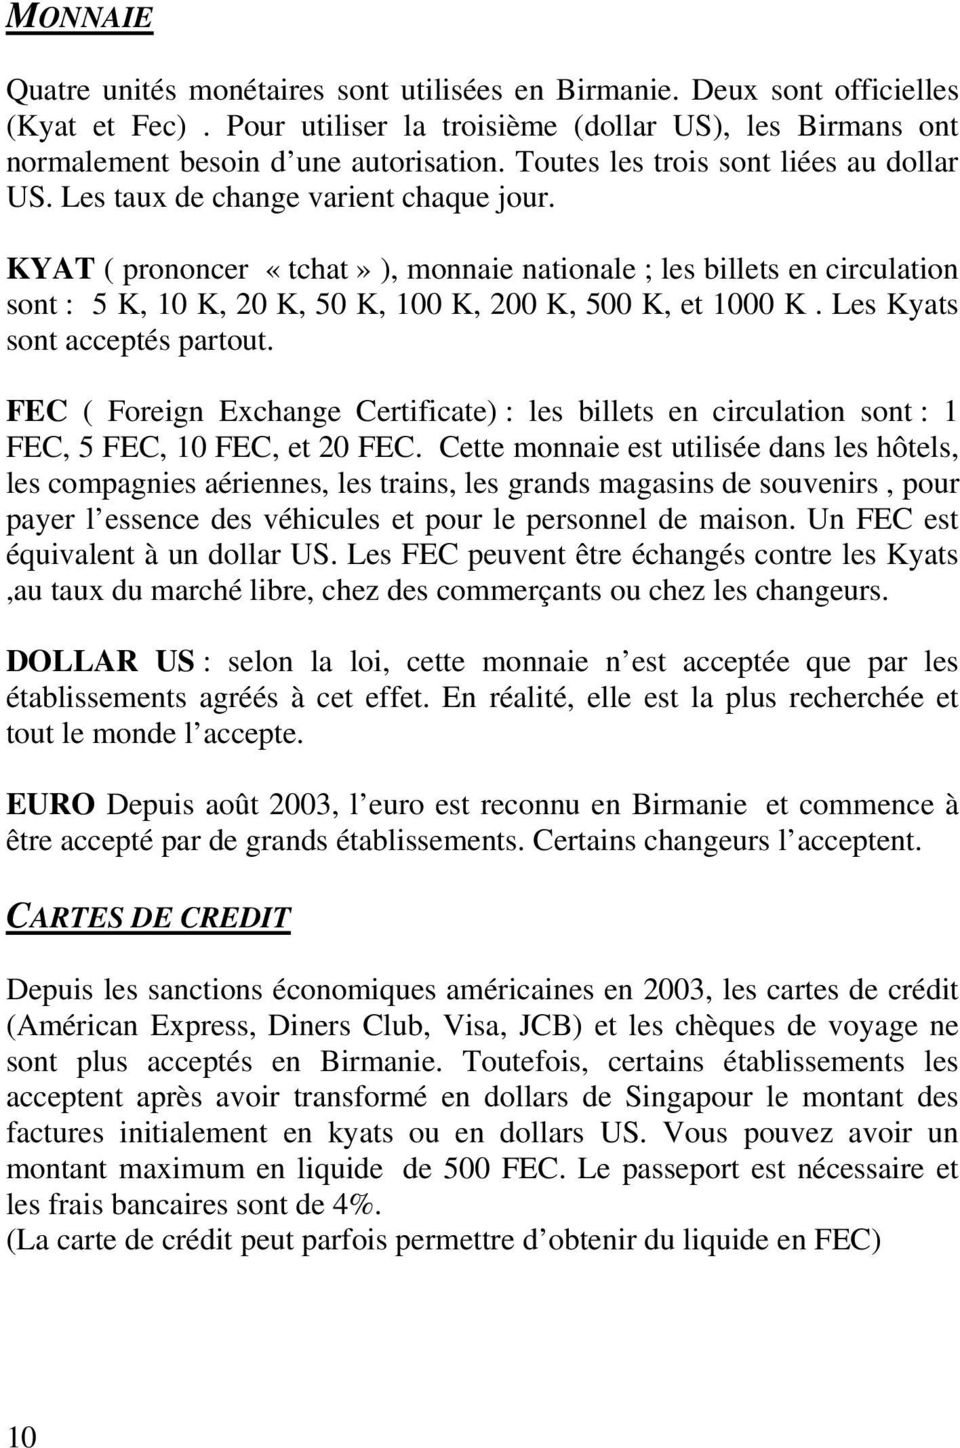 KYAT ( prononcer «tchat» ), monnaie nationale ; les billets en circulation sont : 5 K, 10 K, 20 K, 50 K, 100 K, 200 K, 500 K, et 1000 K. Les Kyats sont acceptés partout.